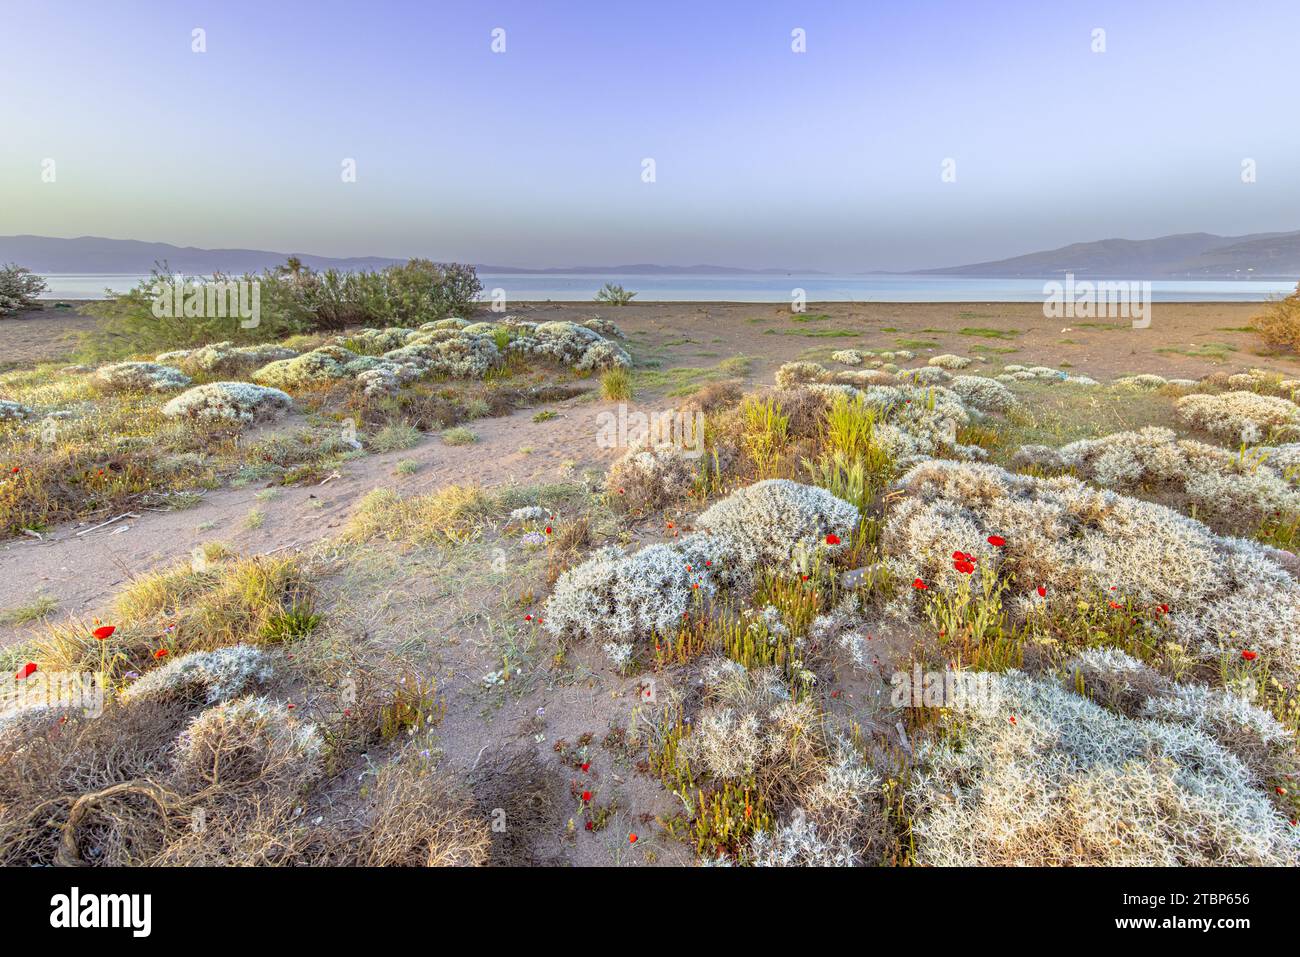 Strauch Vegetation in Alykes Feuchtgebiete sheepfields birding Website auf der Insel Lesbos, Griechenland Stockfoto